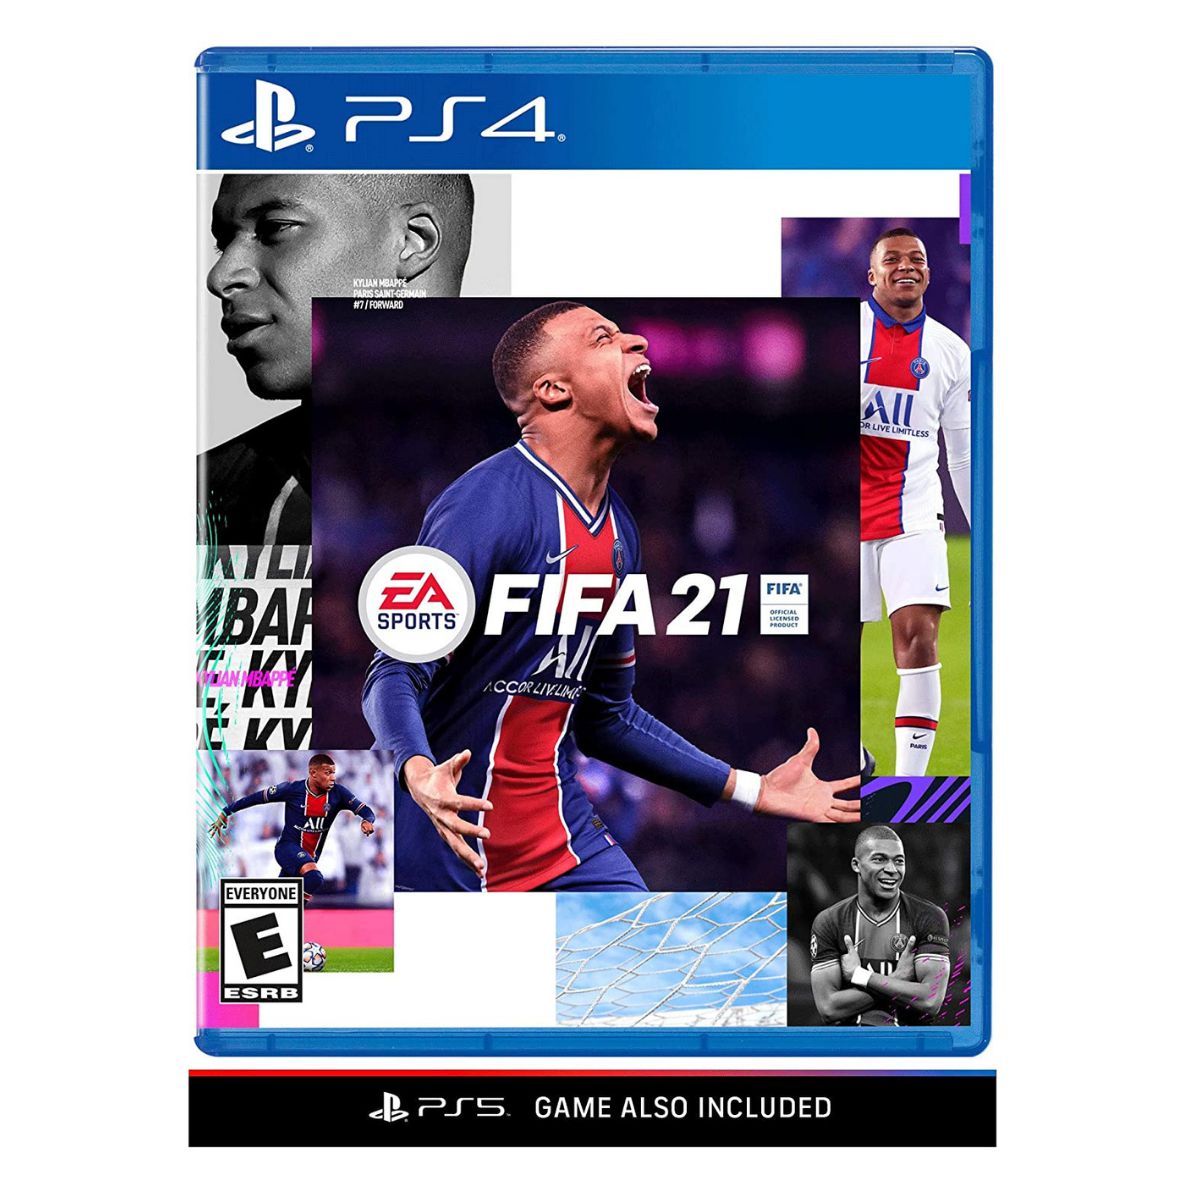 FIFA 23 - XBOX SERIES X  Compra e venda de jogos e consoles